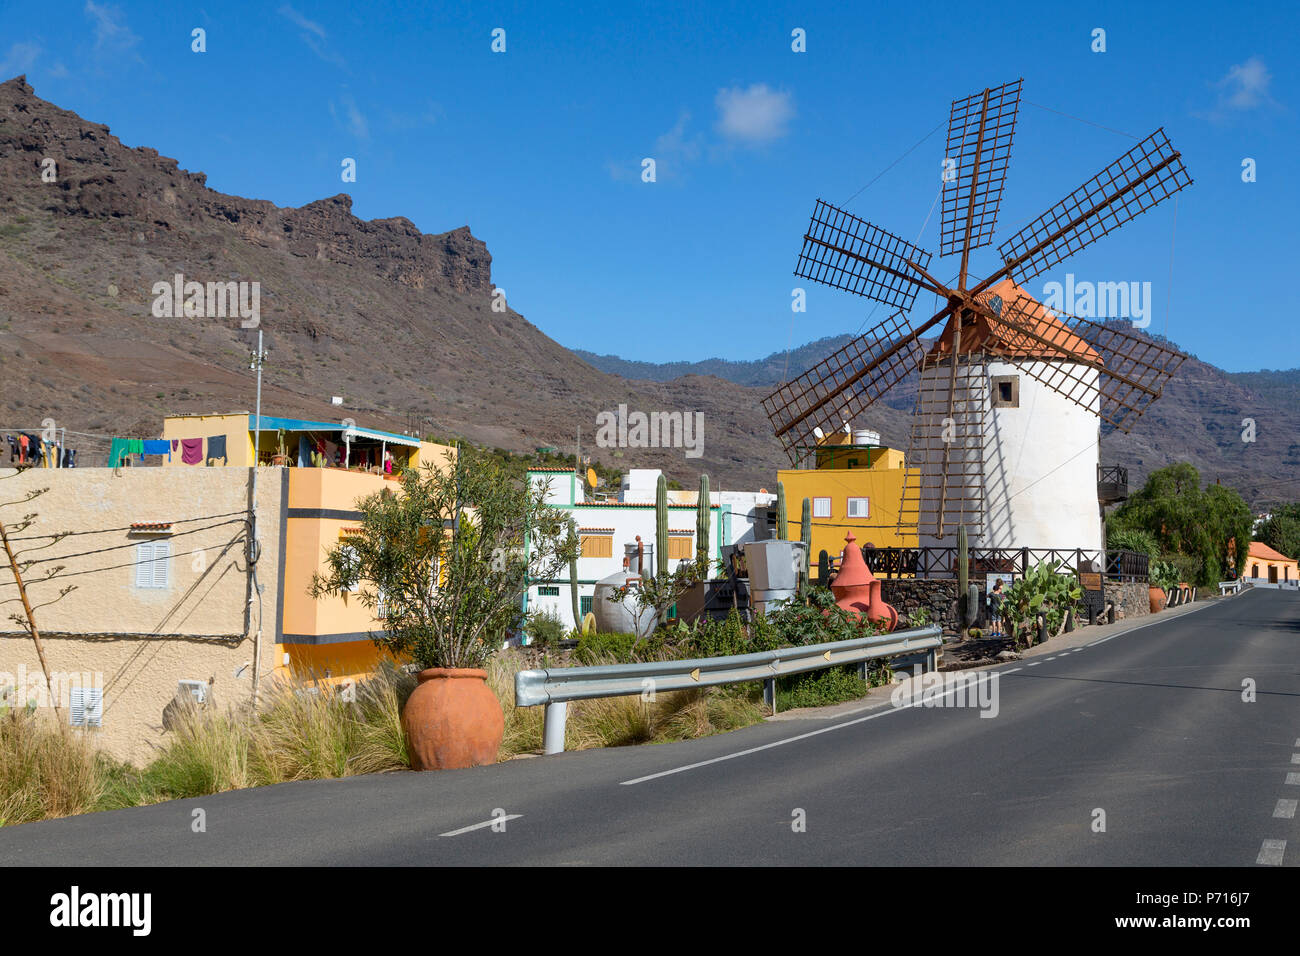 Traditionelle restaurierte Windmühle, Molino de Viento, in Barranco de Mogan, in der Nähe des Dorfes Mogan, Gran Canaria, Kanarische Inseln, Spanien, Atlantik Stockfoto